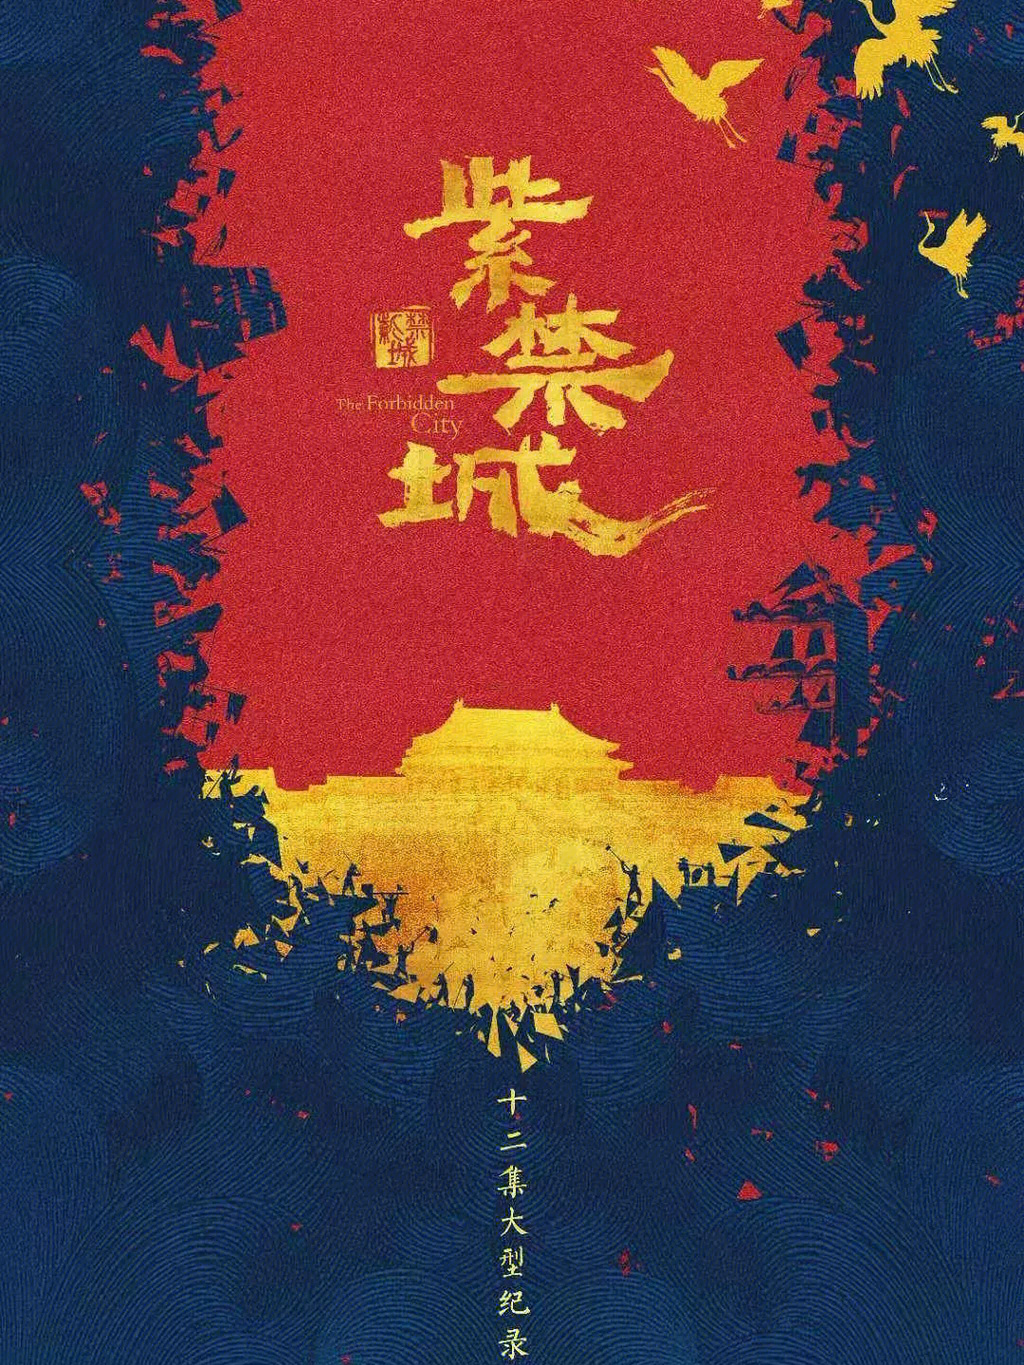 紫禁城纪录片海报图片